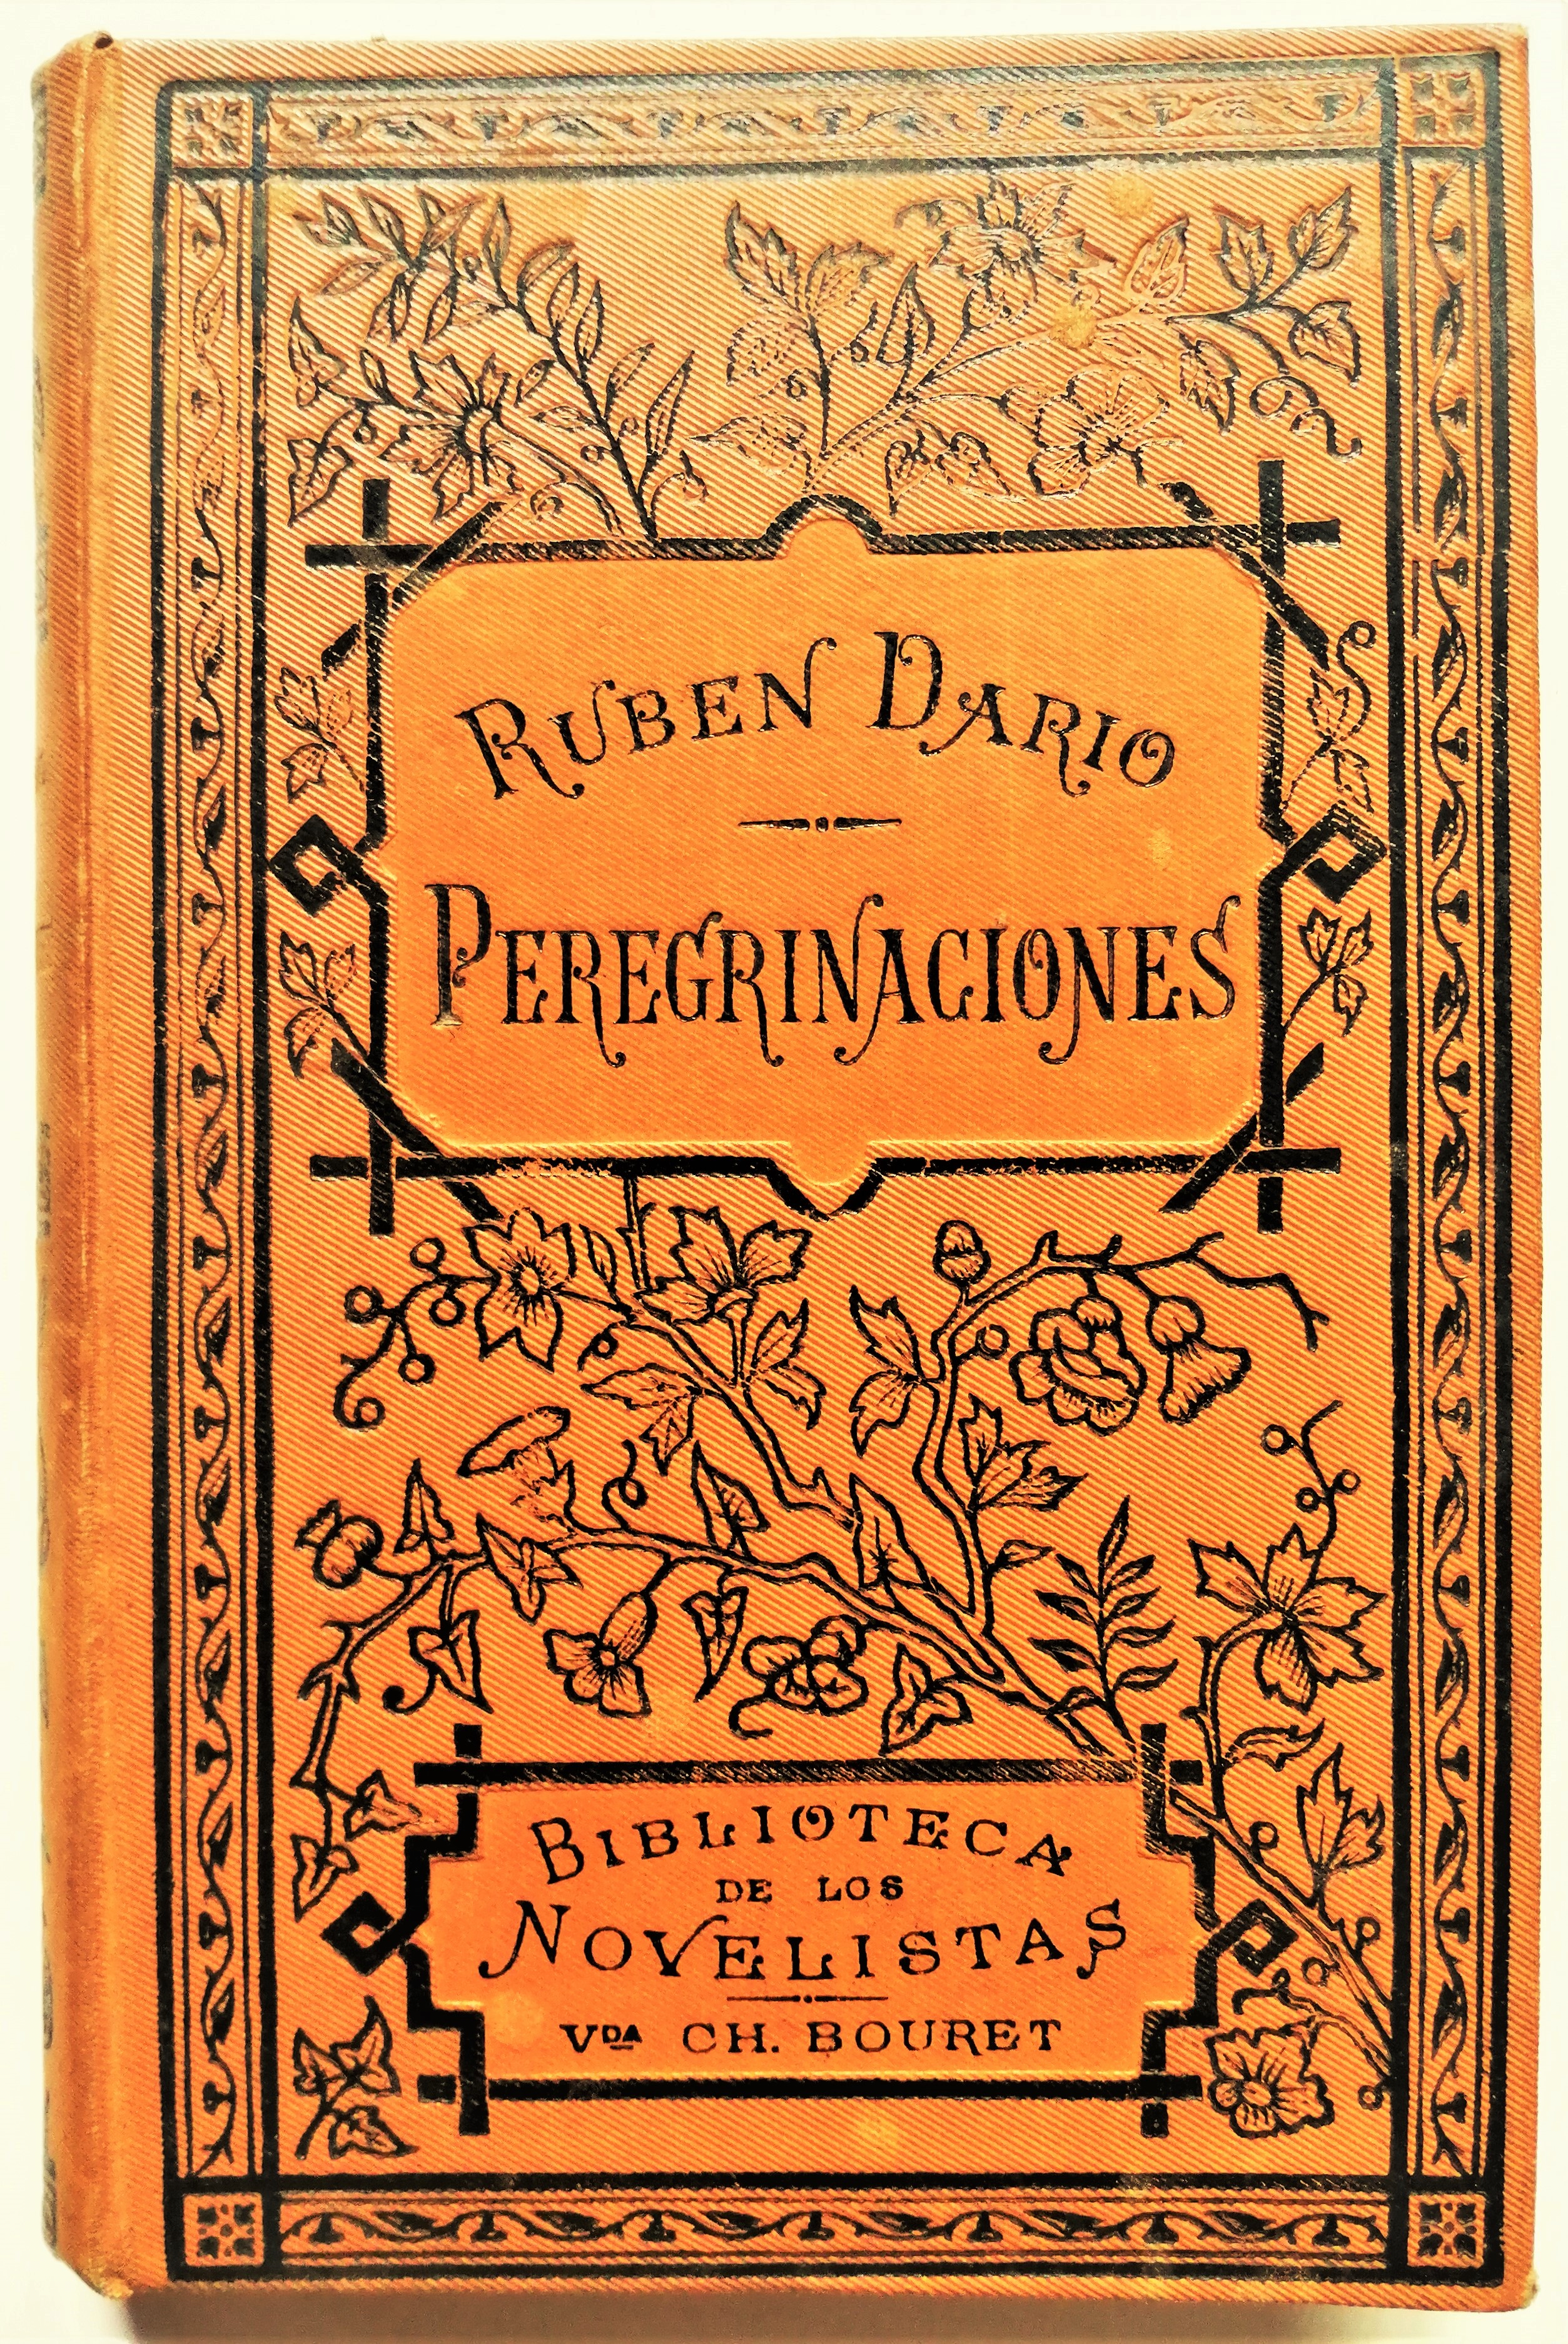 Rubén Darío - Peregrinaciones